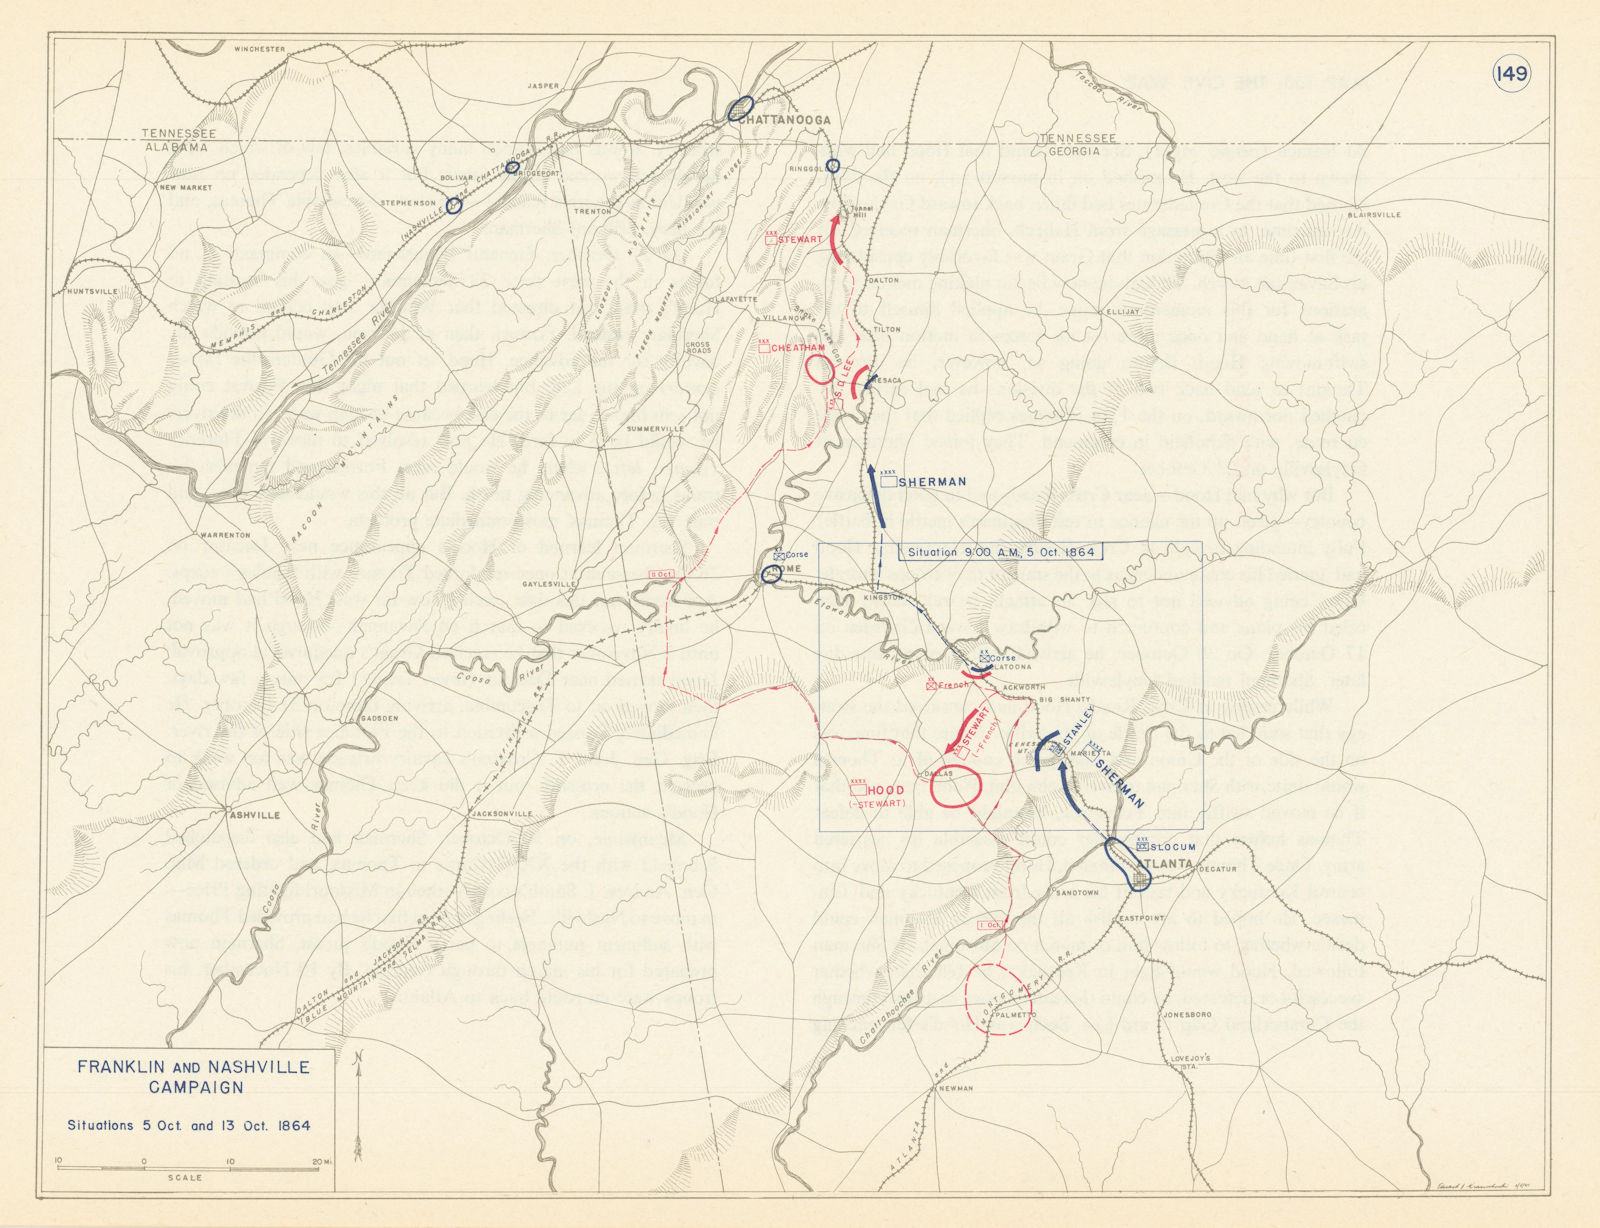 American Civil War. 5-13 October 1864 Franklin & Nashville Campaign 1959 map